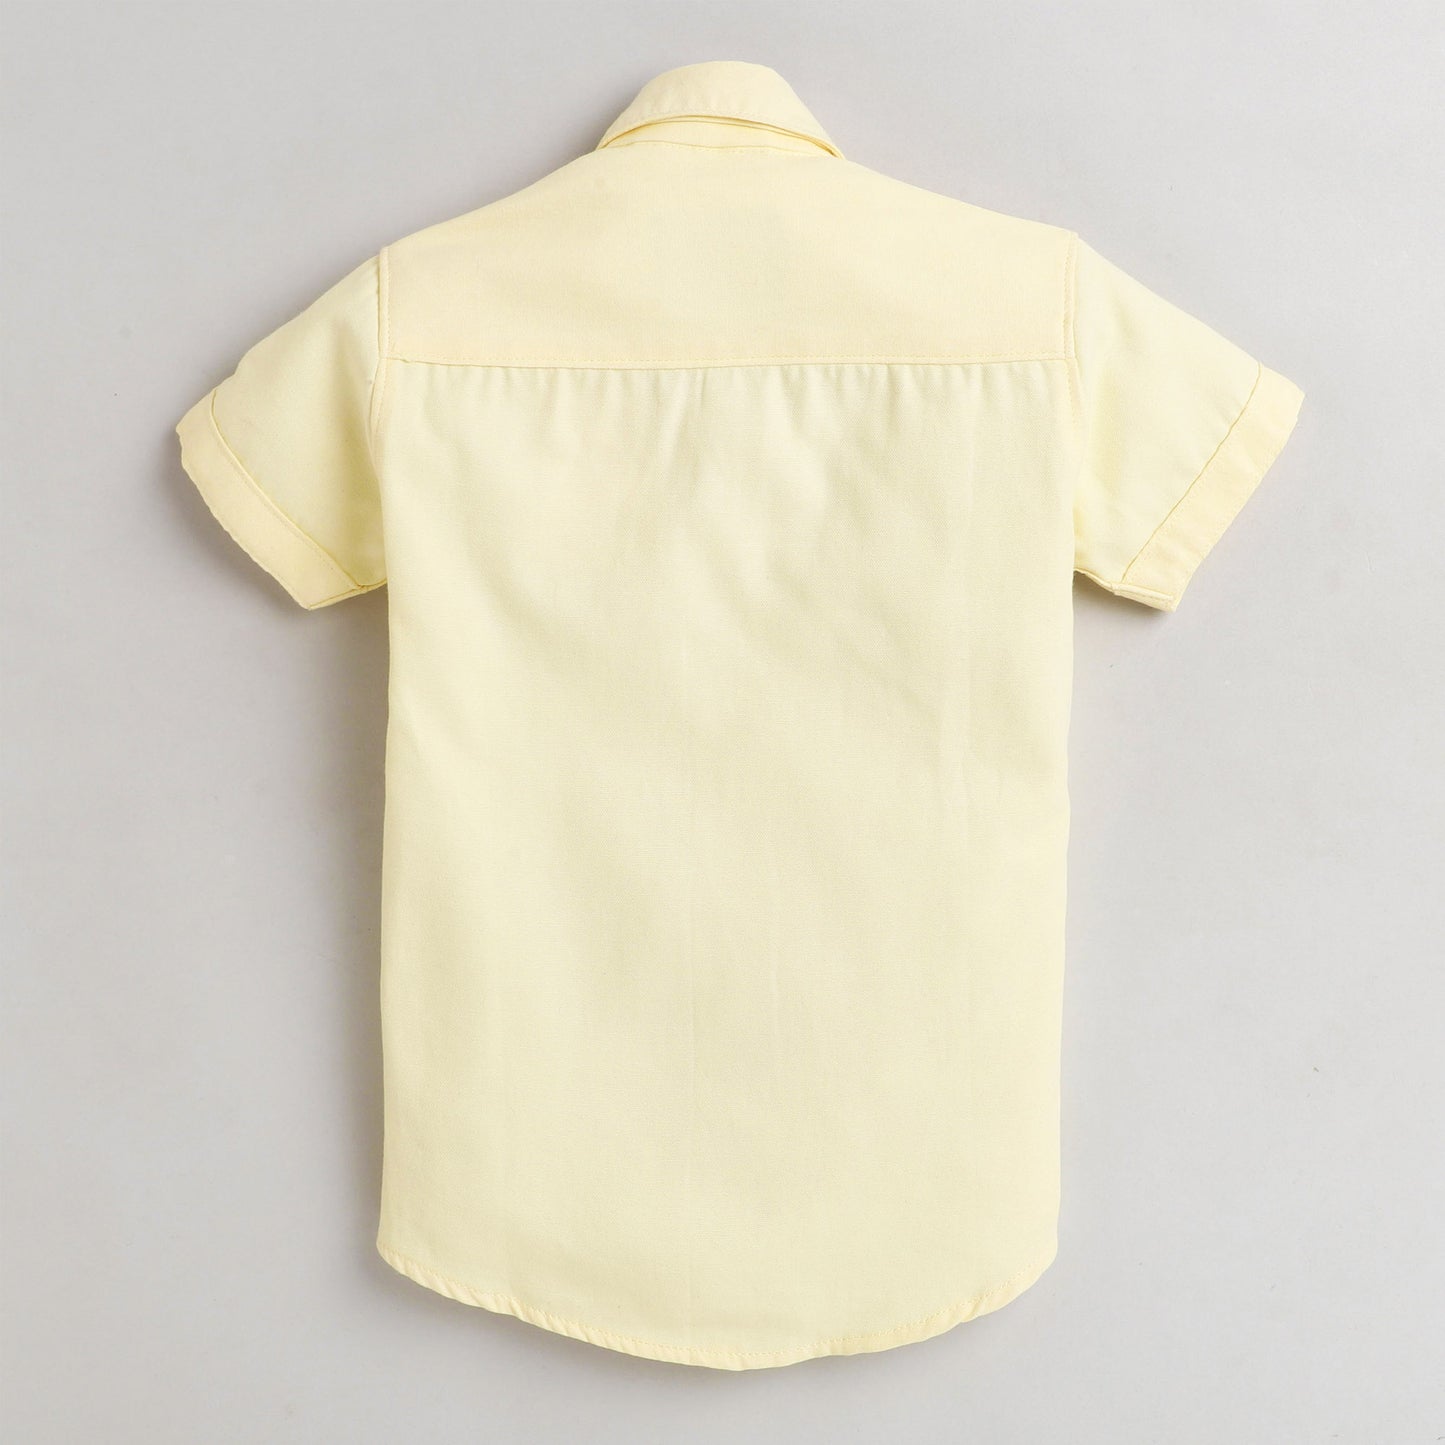 Polka Tots Half Sleeve Shirt with Giraffe Yellow